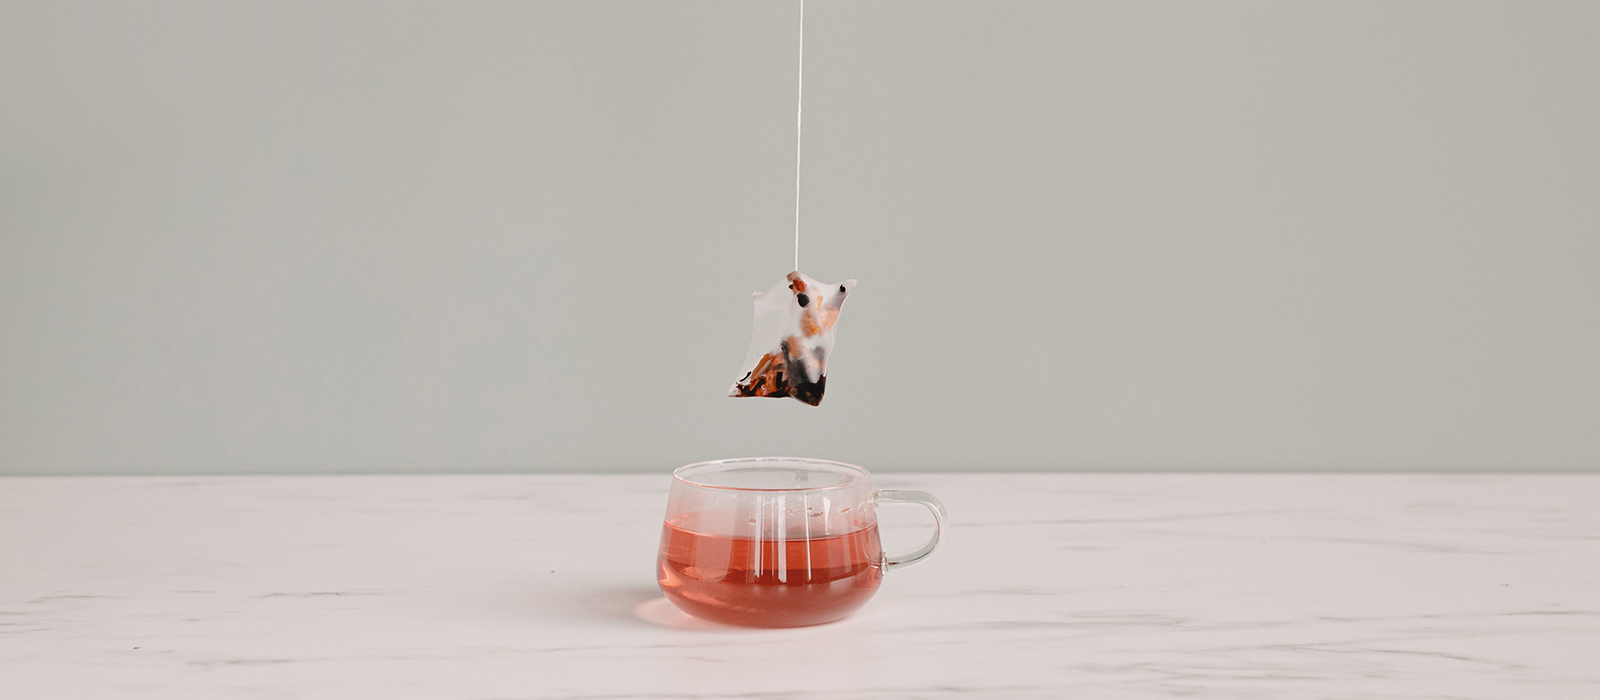 Comment infuser du thé en vrac de la meilleure manière ?